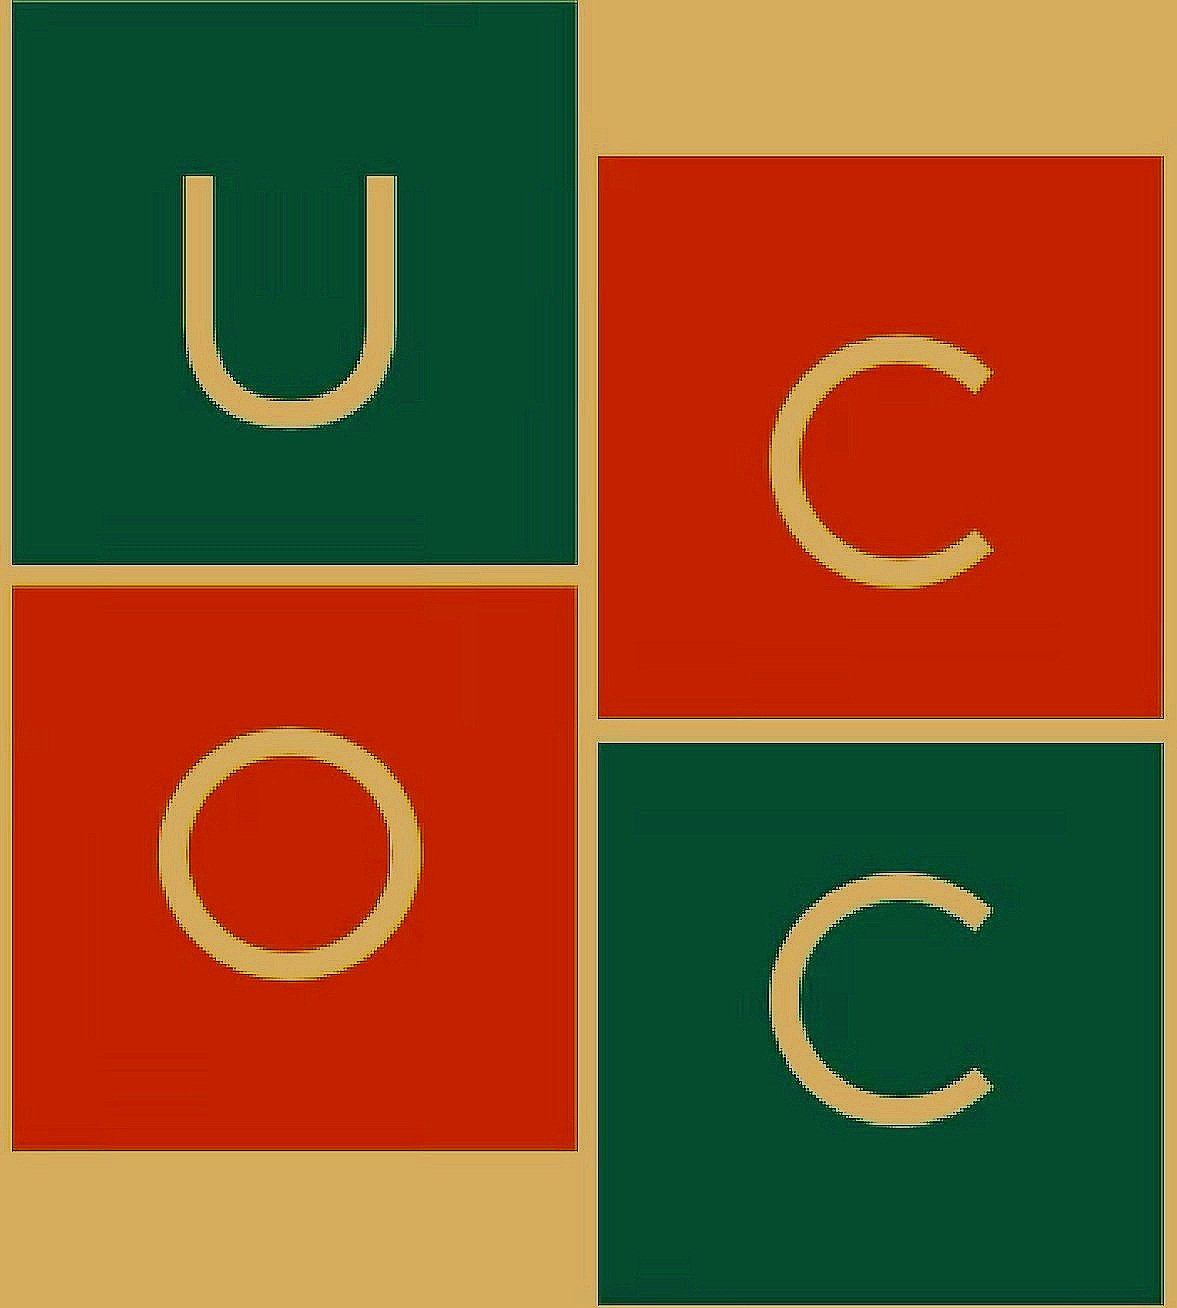 Urology Center of Orange County (UCOC)